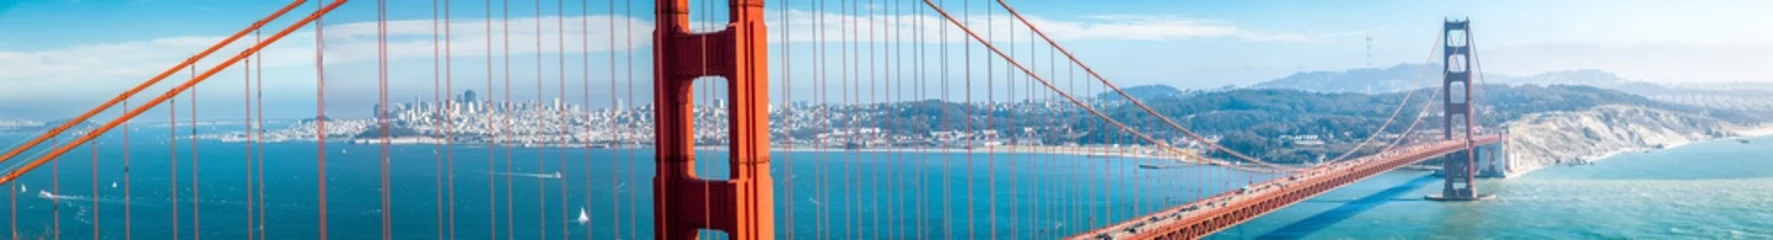 Selbstklebende Fototapeten Golden Gate Bridge-Panorama mit Skyline von San Francisco im Sommer, Kalifornien, USA © JFL Photography